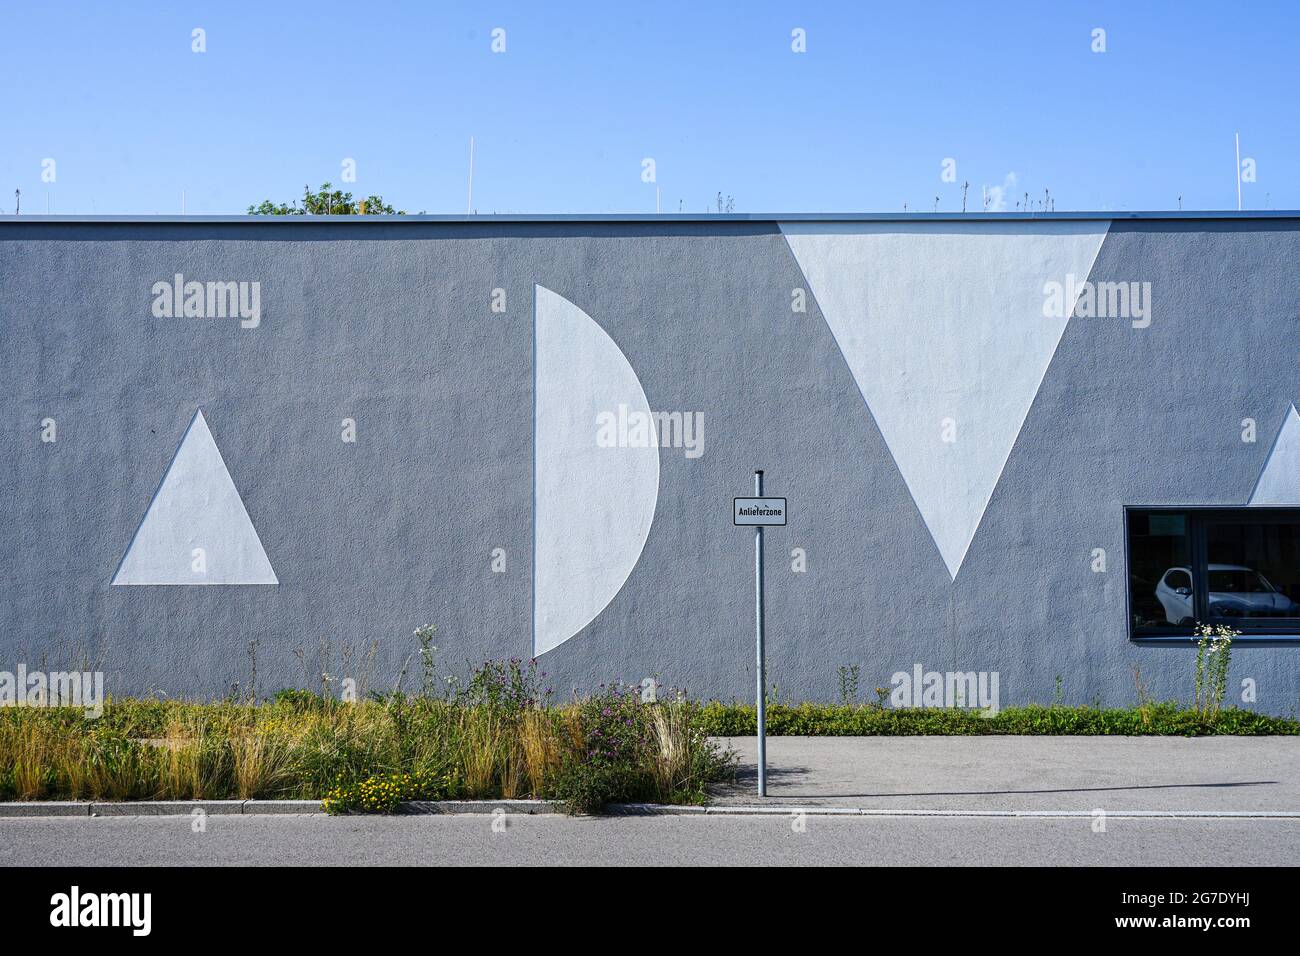 Blick auf die Fassade des Center for Advanced Laser Applications (CALA), das sich auf dem Research Hightech Campus in Garchen, München, befindet. Stockfoto